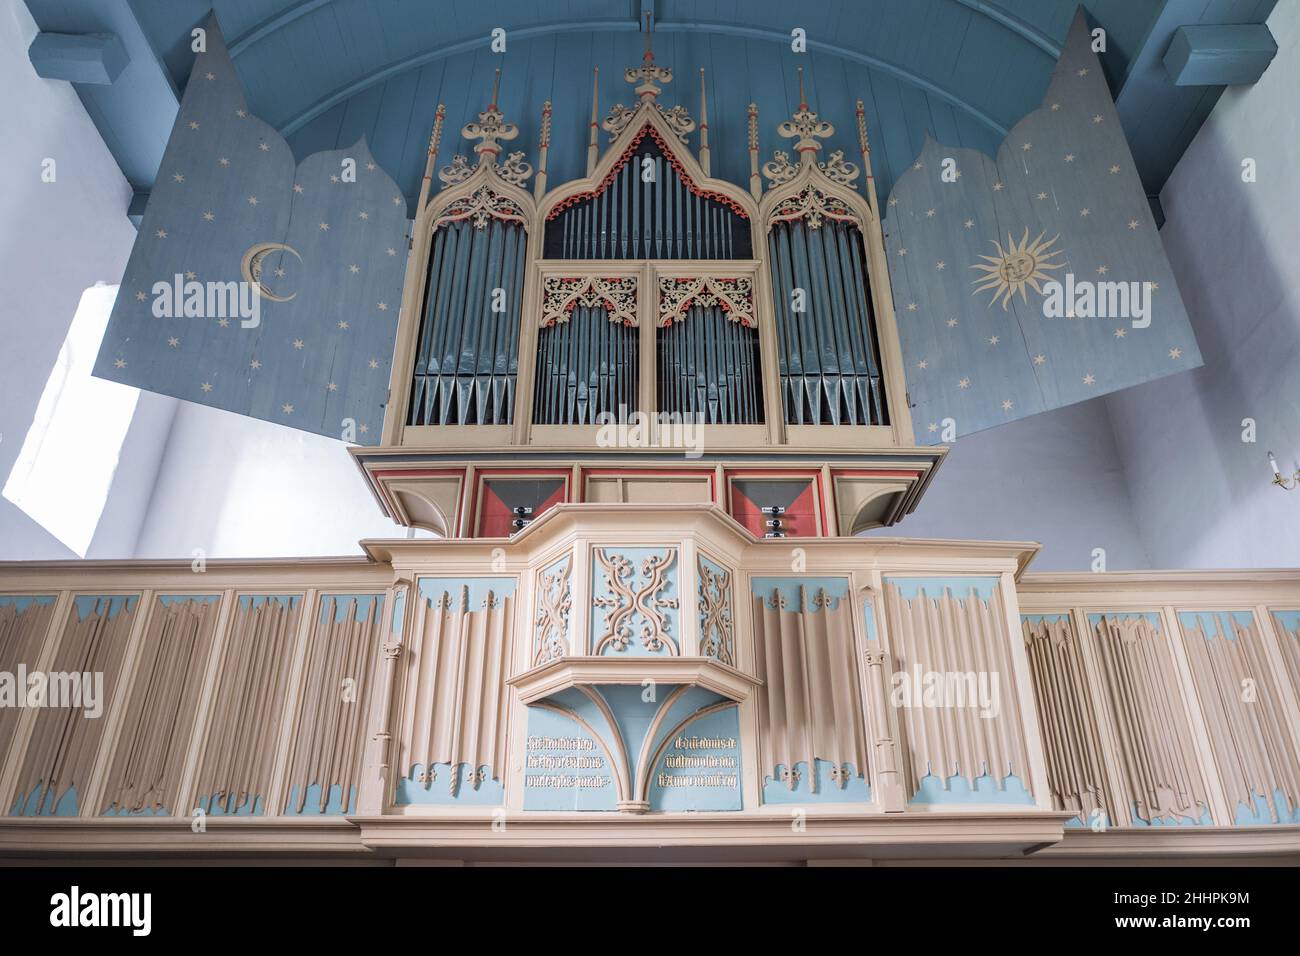 Orgel in der Kirche Rysum, eine der ältesten spielbaren Orgel der Welt, organ in the church of Rysum, one of the oldest playable organs in the world Stock Photo